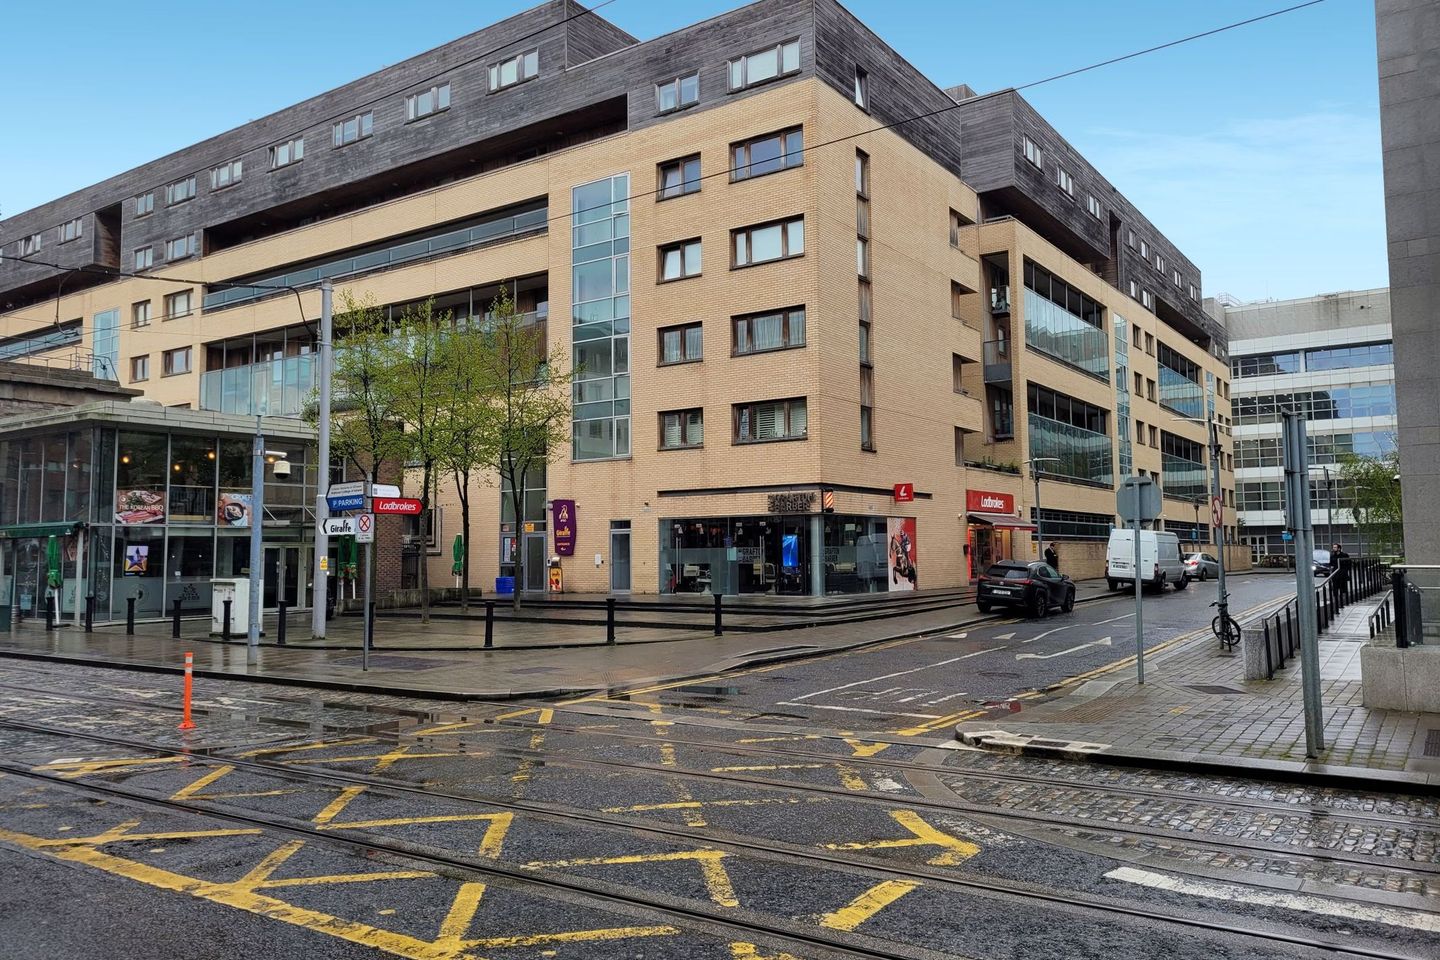 Apartment 9, Block 11, Clarion Quay, IFSC, Dublin 1, D01F797